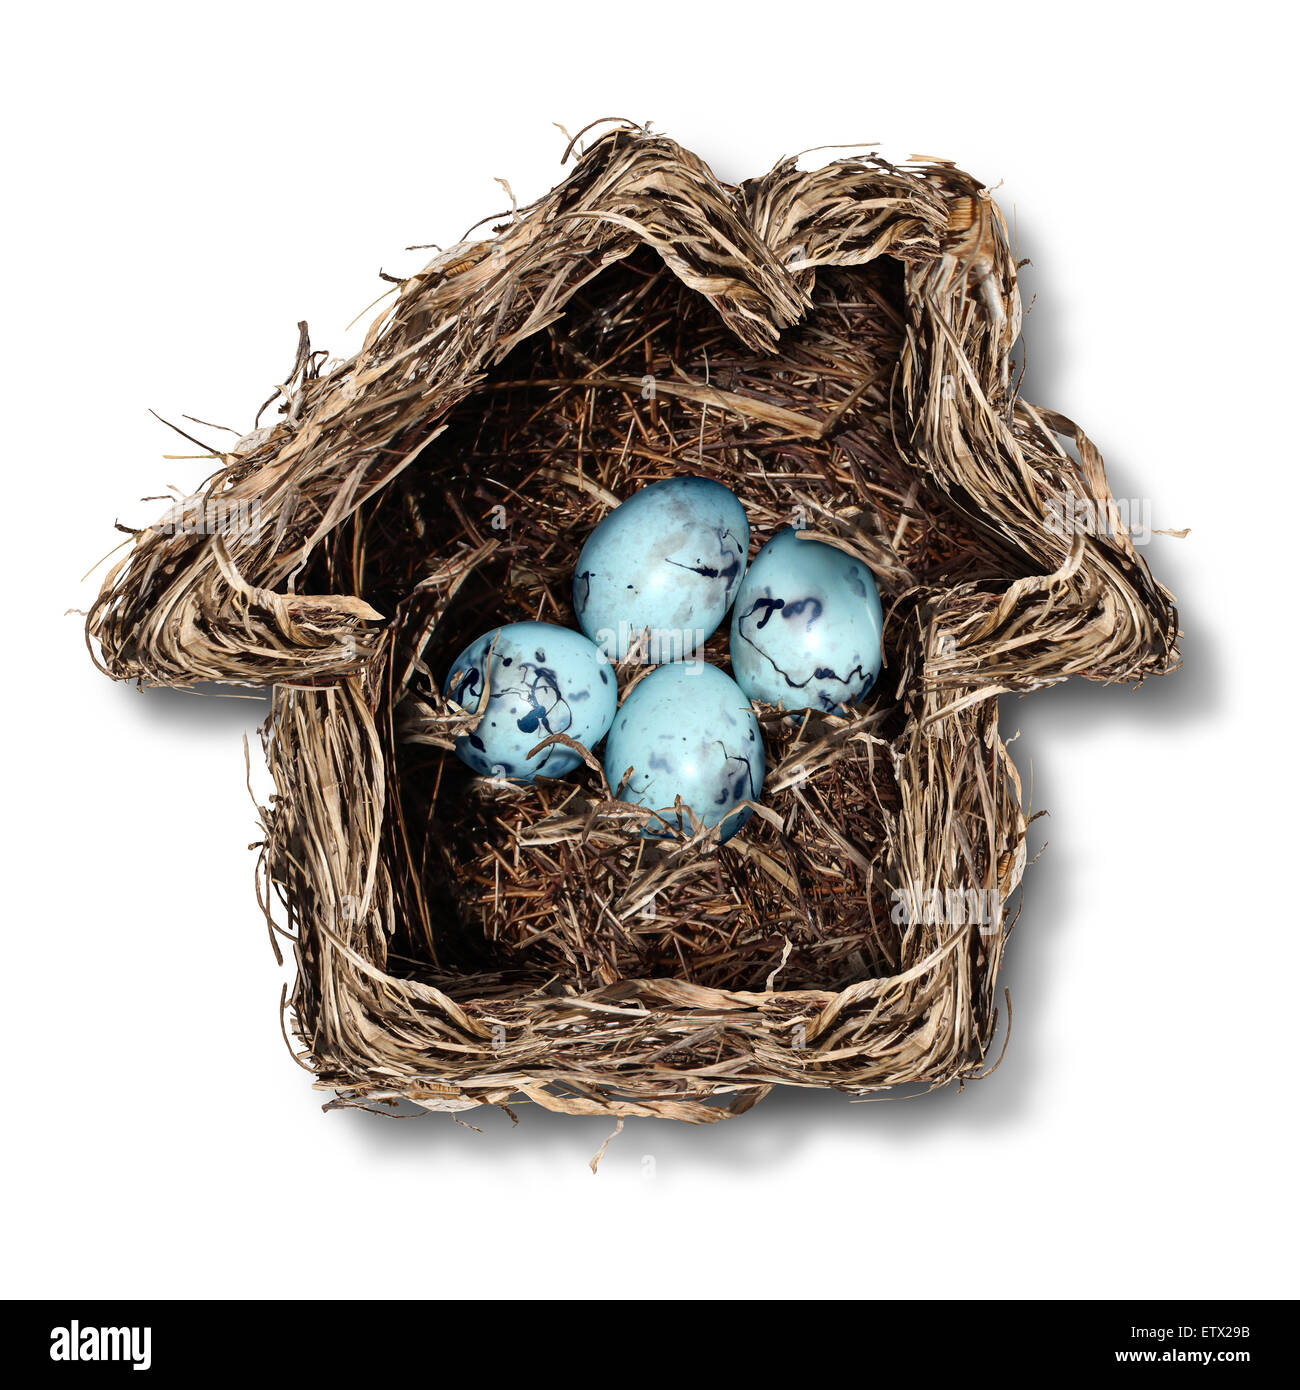 Home concept d'assurance et de la sécurité de la famille comme un symbole en forme de nid d'oiseaux qu'une maison avec un groupe d'oeufs fragiles à l'intérieur comme une métaphore pour la protection de résidence ou de parent. Banque D'Images